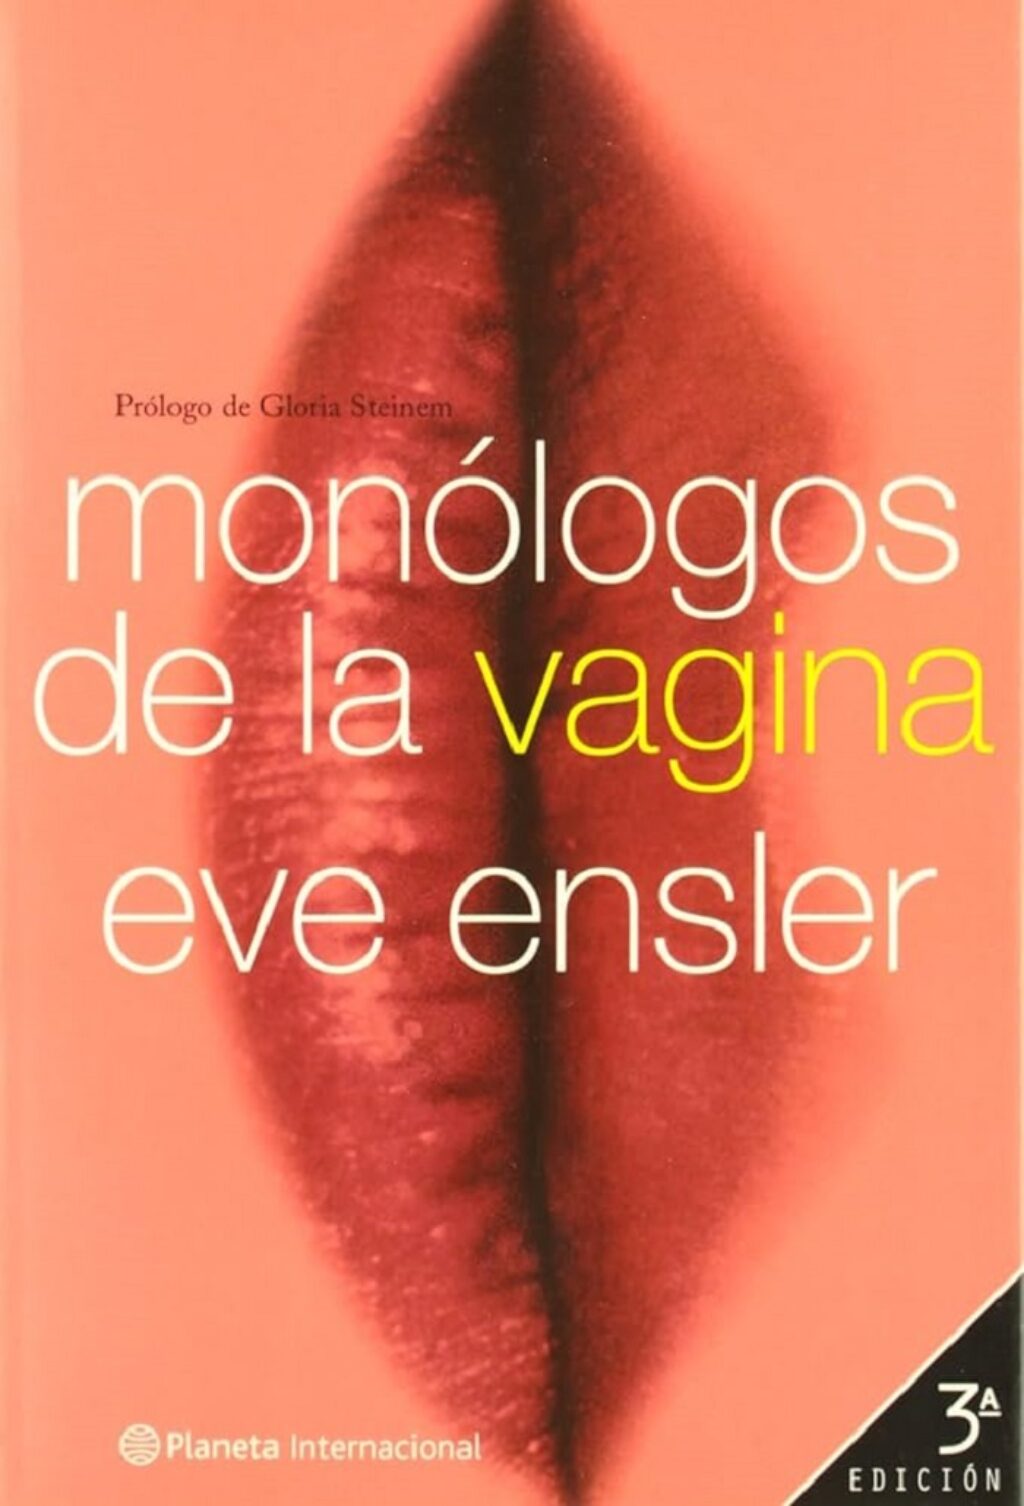 Portada de la tercera edición de Los monólogos de la vagina por Ediciones Planeta.